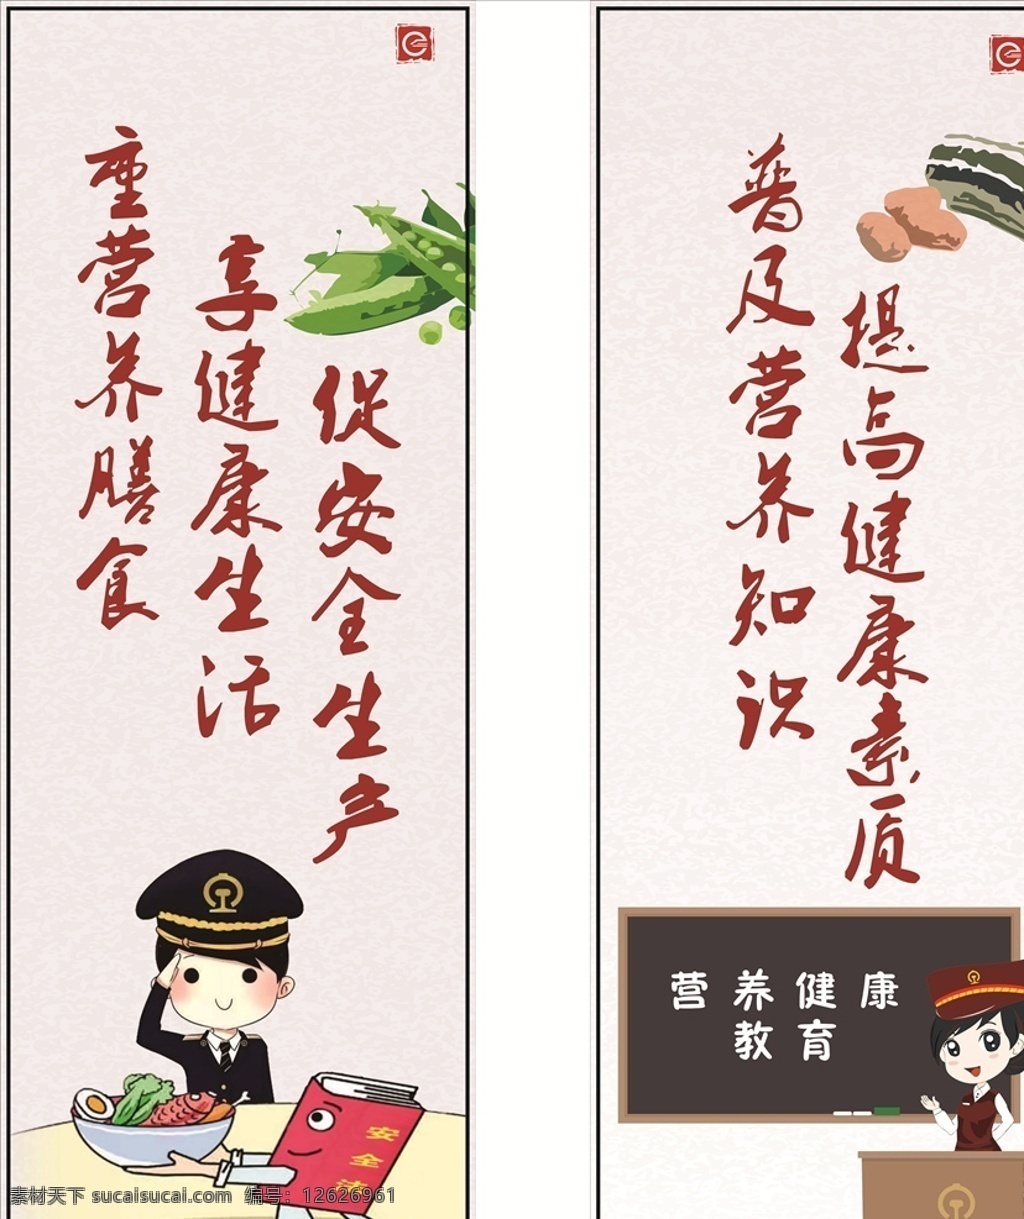 营养膳食 营养健康教育 食品安全 挂画 中国风 卡通 动漫 食堂 学校 蔬菜 安全生产